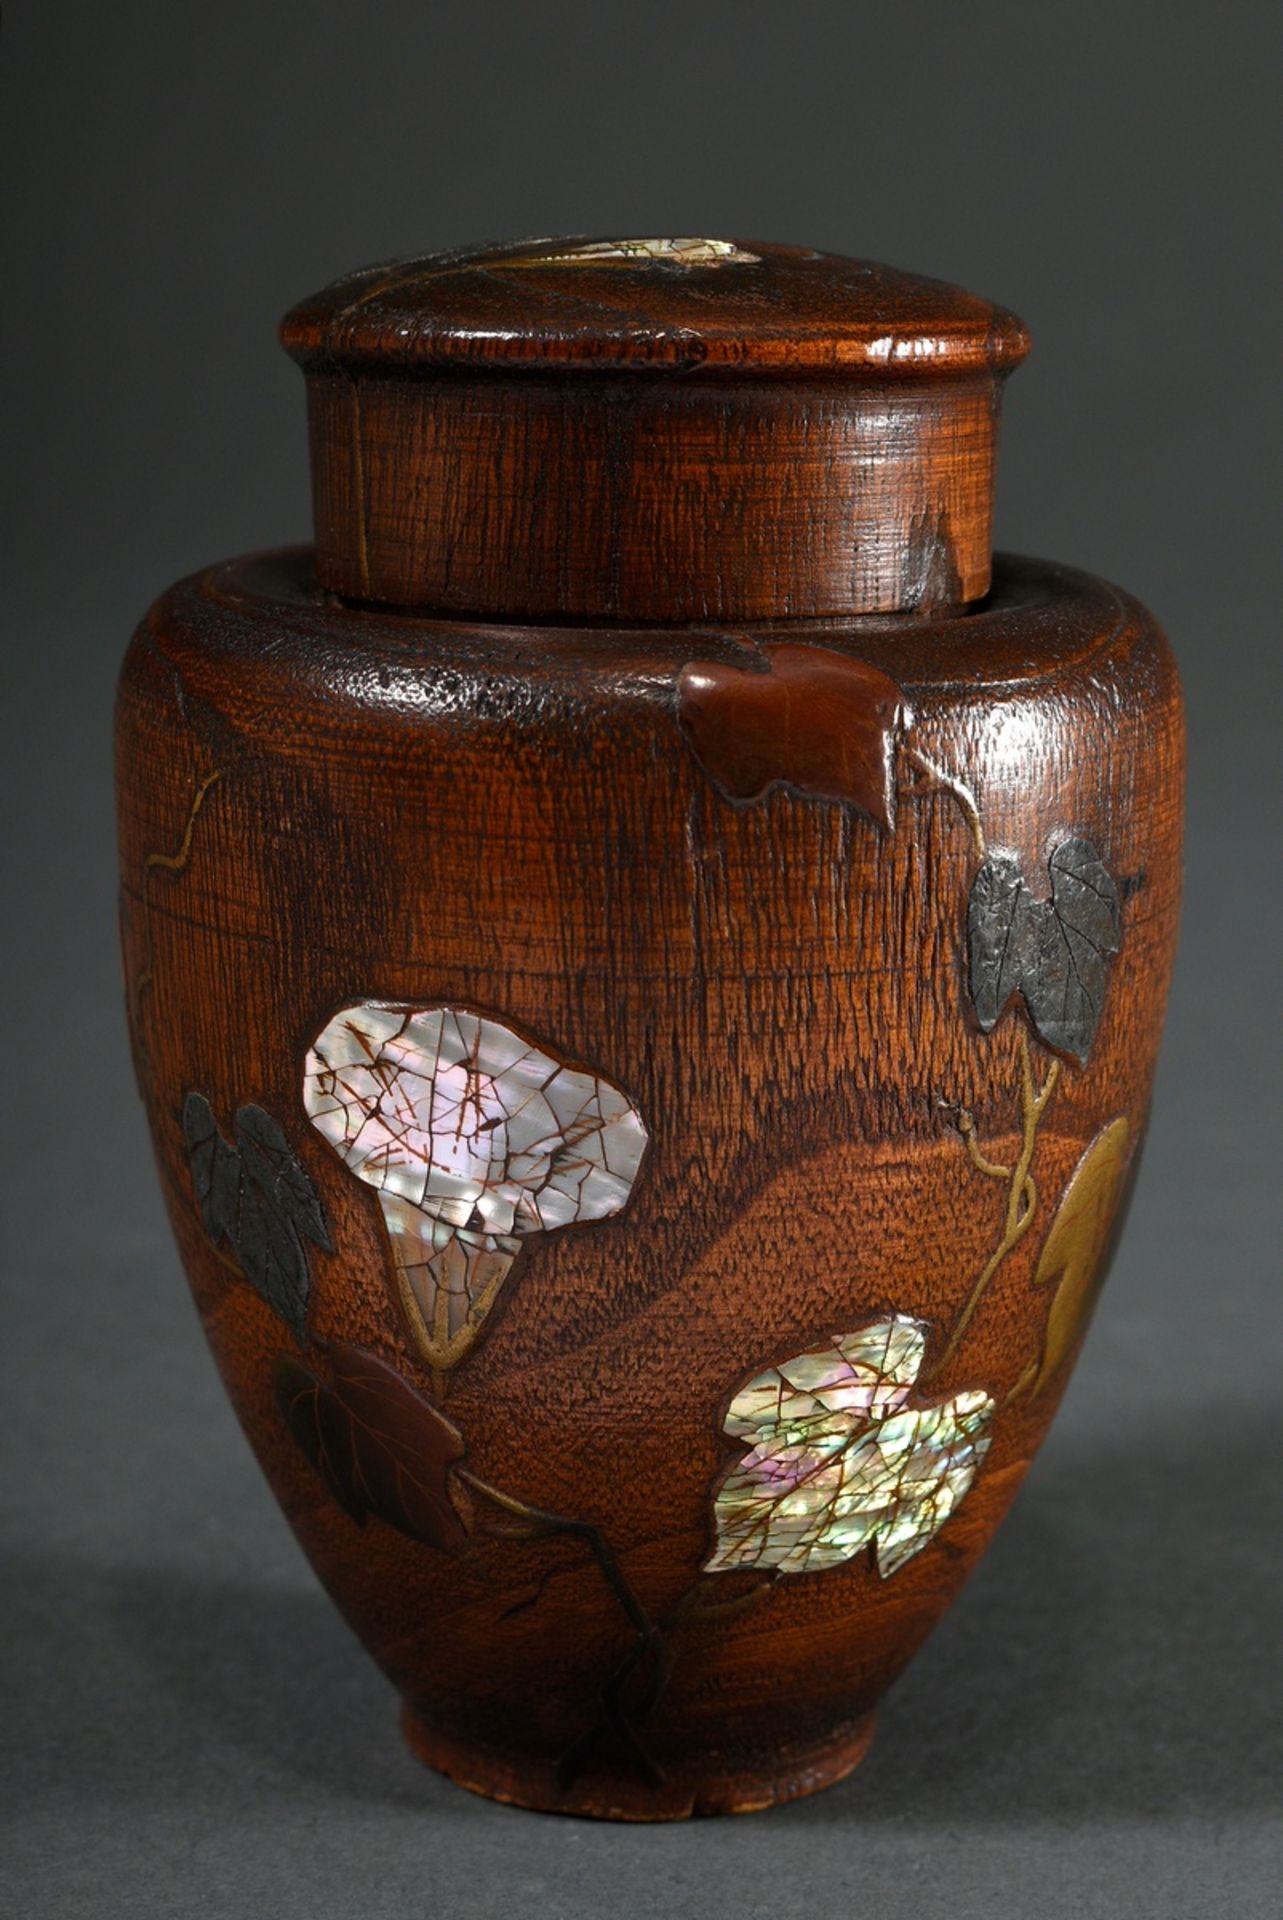 Japanische Bambus "Natsume“ Teedose mit Takamaki-e Lackdekor und Perlmutt Einlagen "Windenblüten“, 